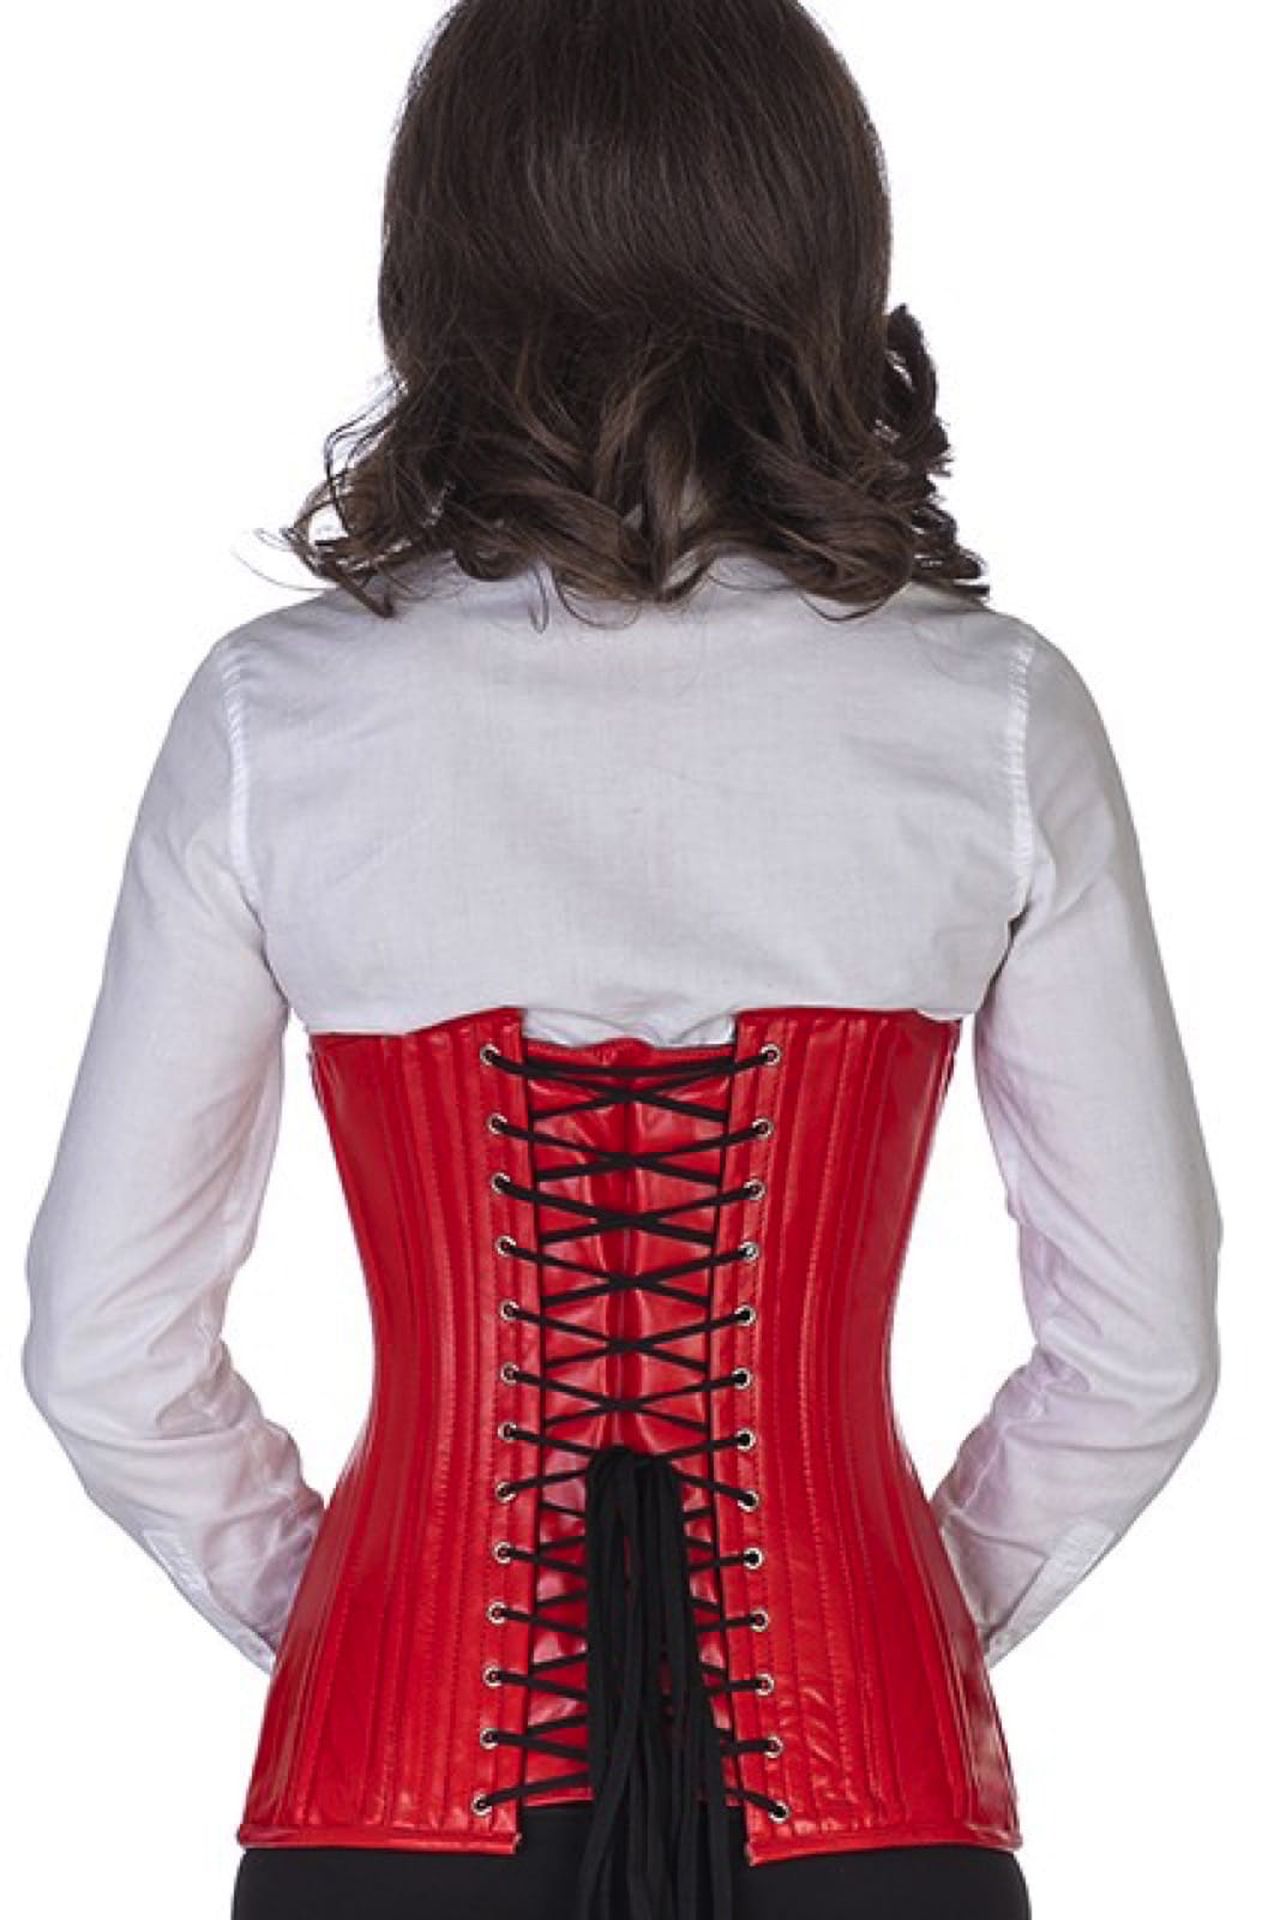 Corse rojo cuero bajo pecho ondeado corset ln23